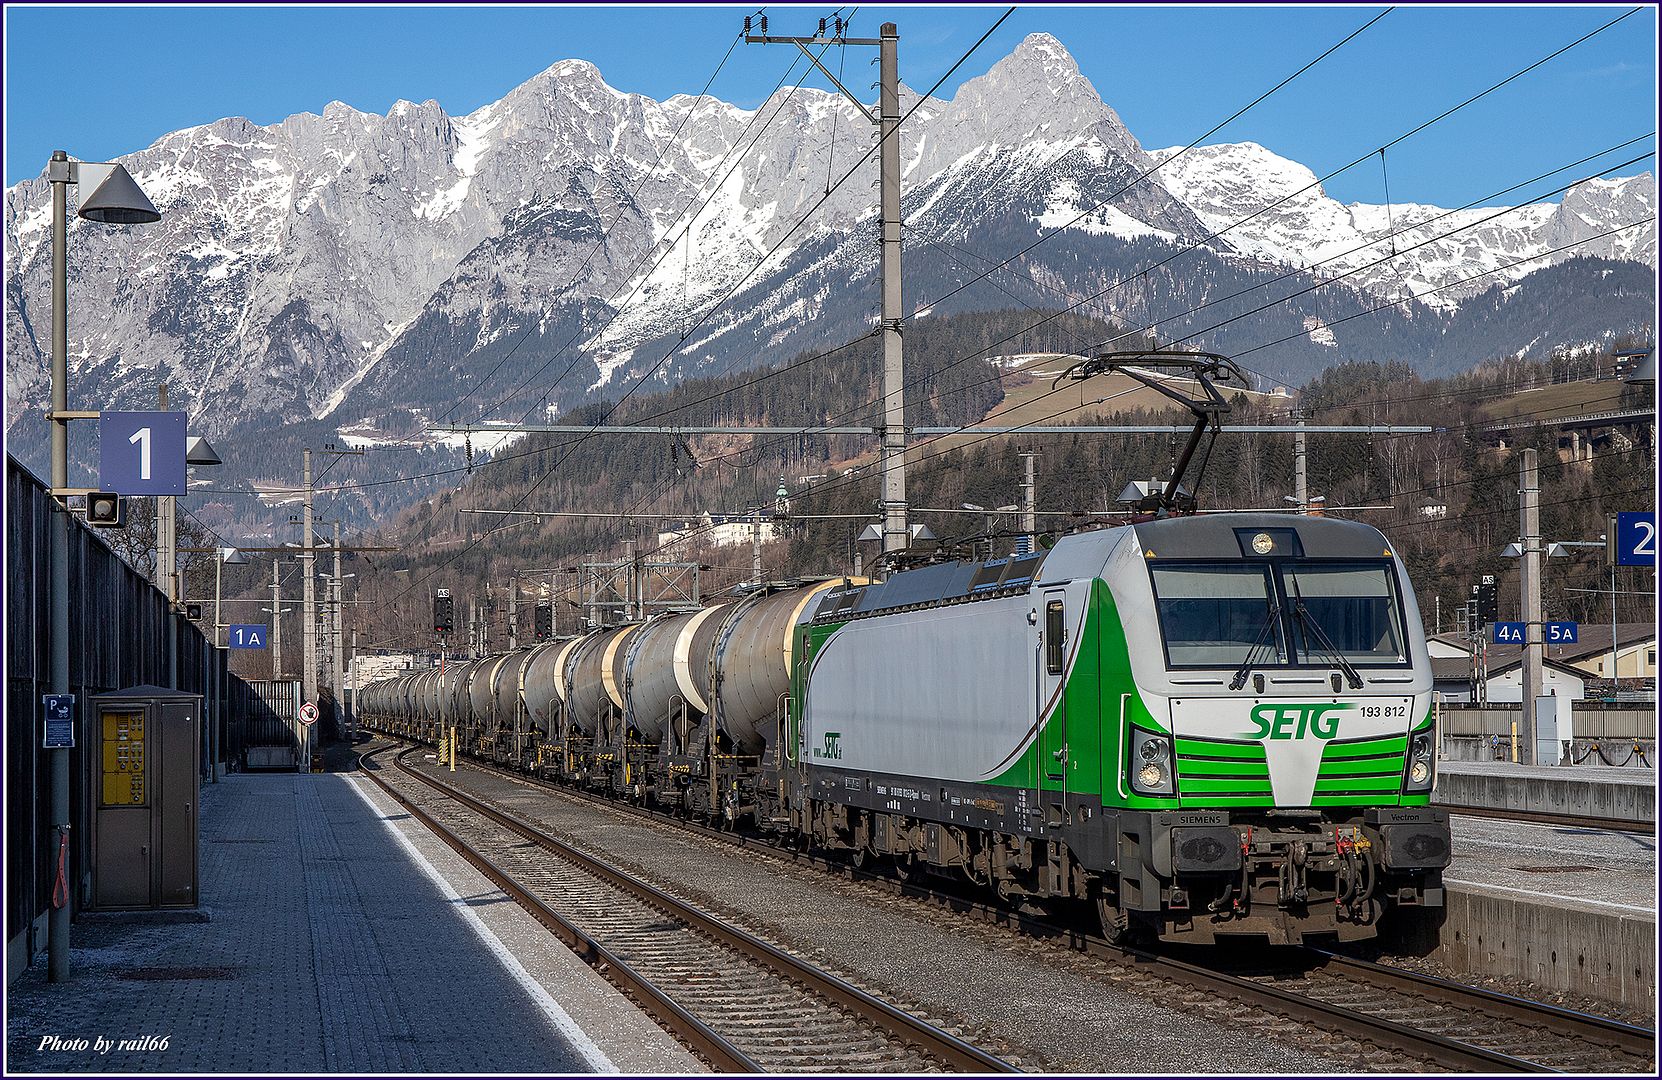 https://i51.photobucket.com/albums/f385/rail66_1/westbahn/salzburg/200/200_03_00051_zps5wddezs0.jpg